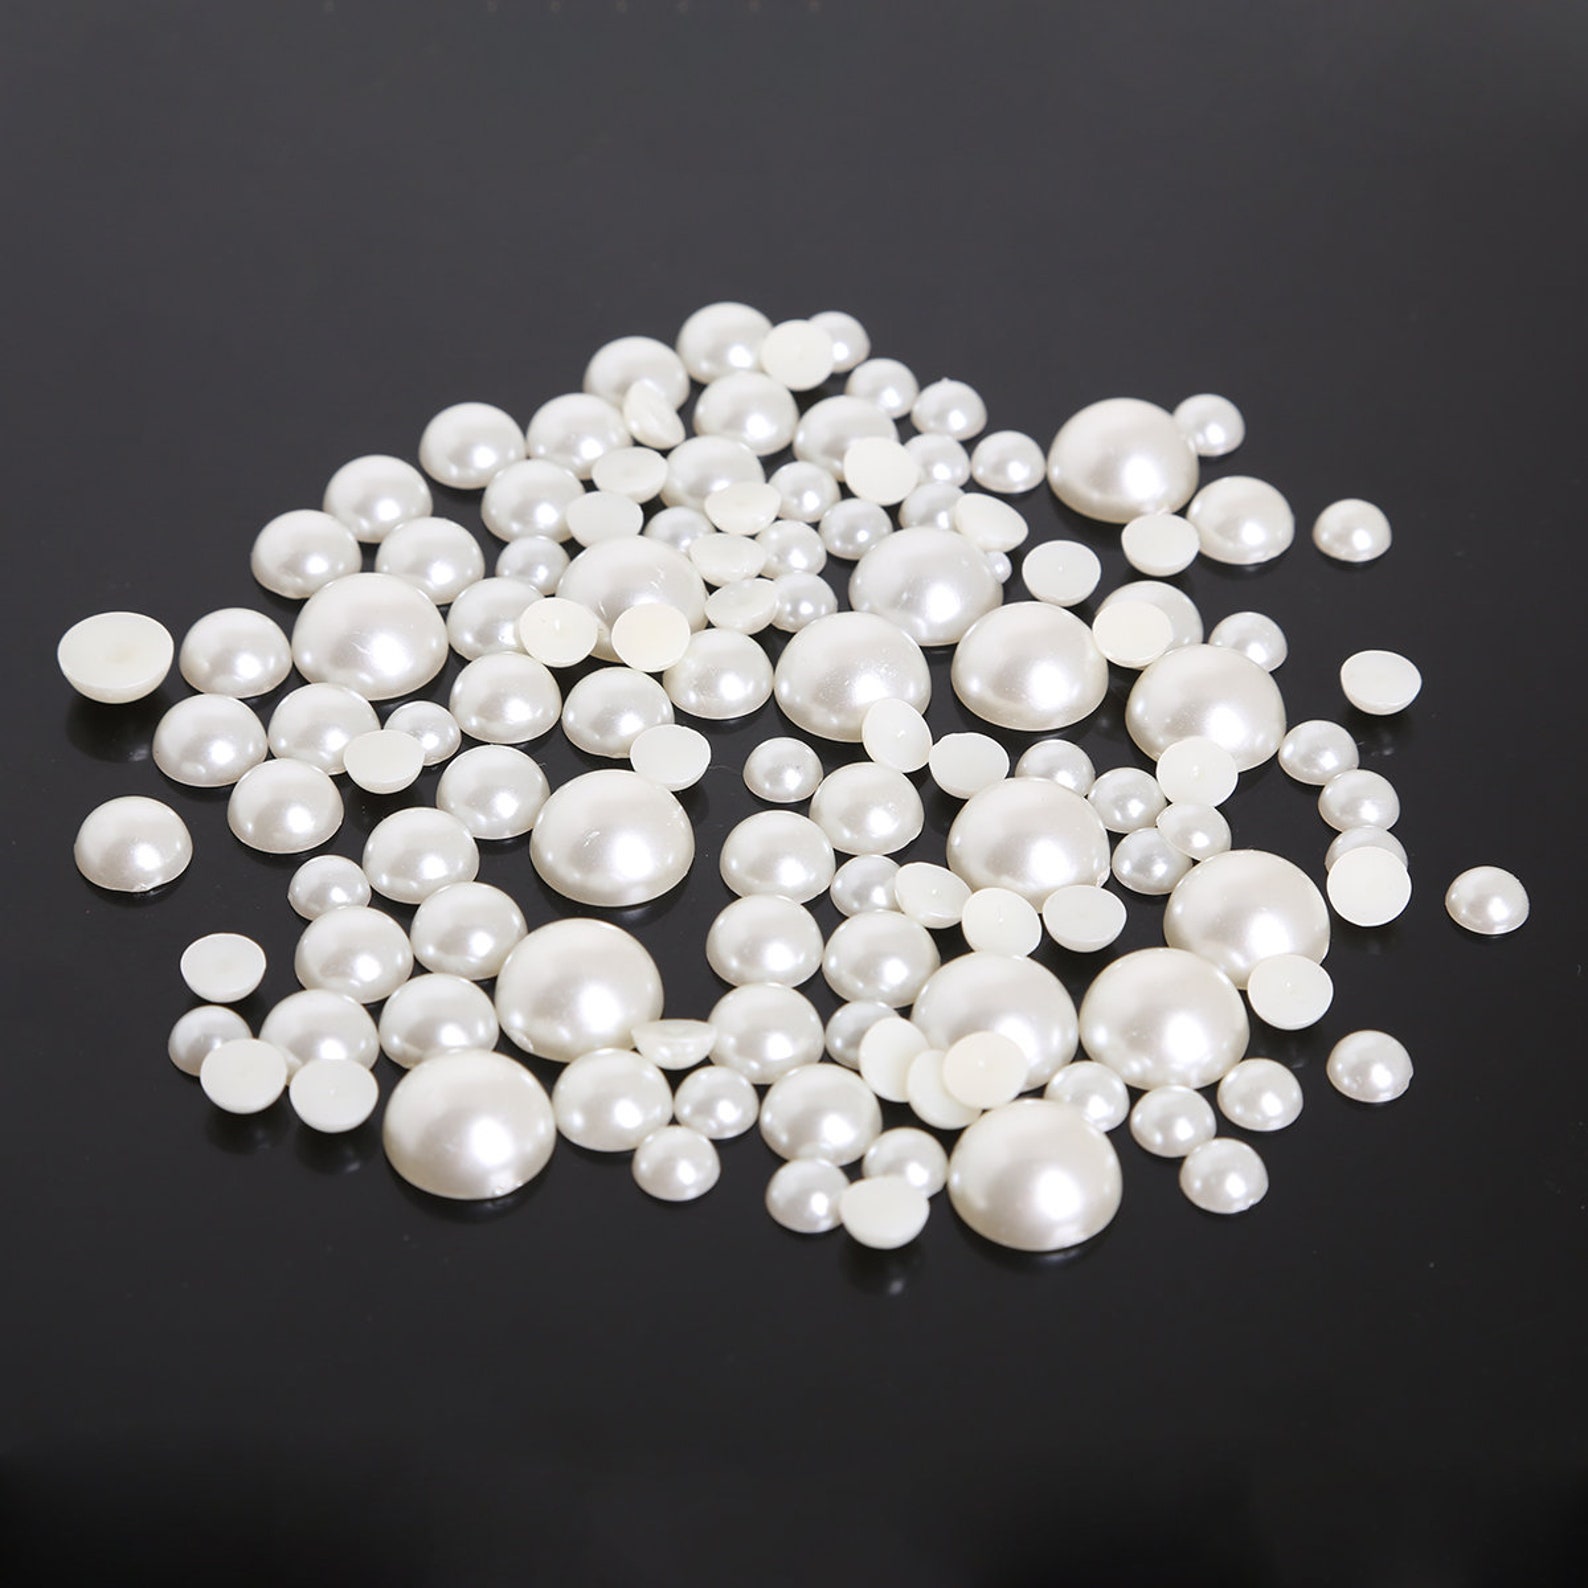 12 SIZES Ivory Flatback Half Round Pearls for Embellishments - Etsy